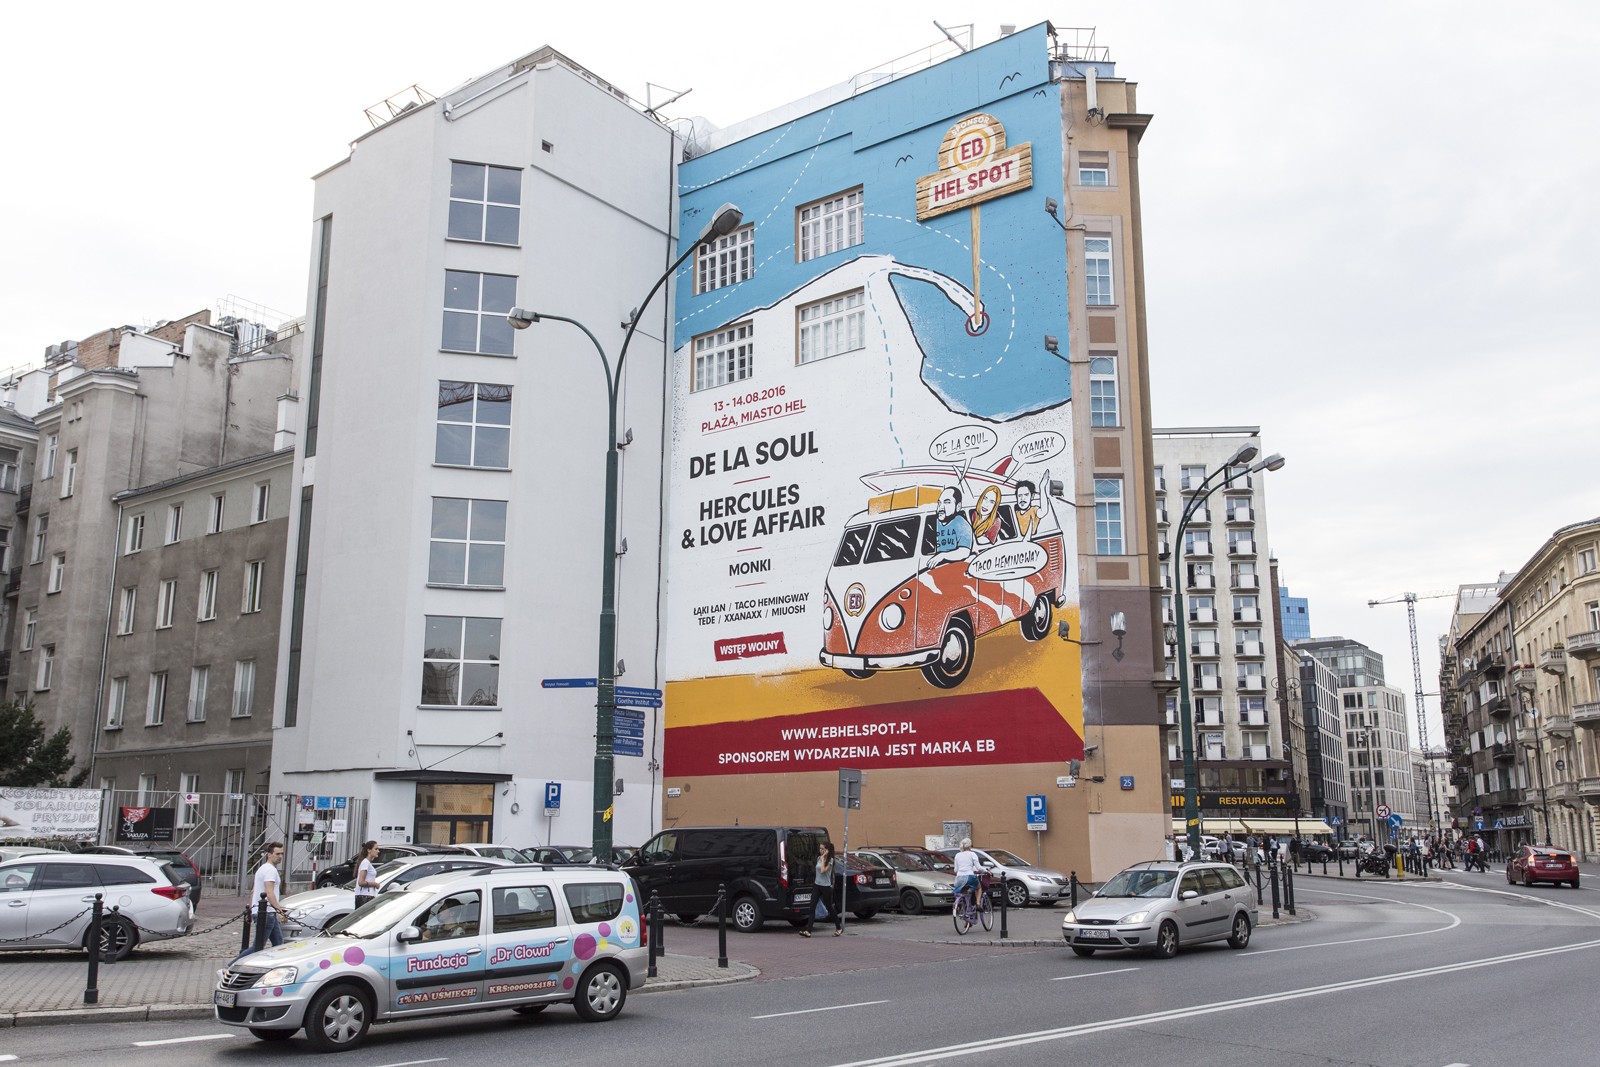 Ein Mural in Bracka 25 in Warschau für Grupa Żywiec als Werbung des Festivals EB Hel Spot mit dem Auftritt von De La Soul, Hercules & Love Affair | EB Hel Spot | Portfolio